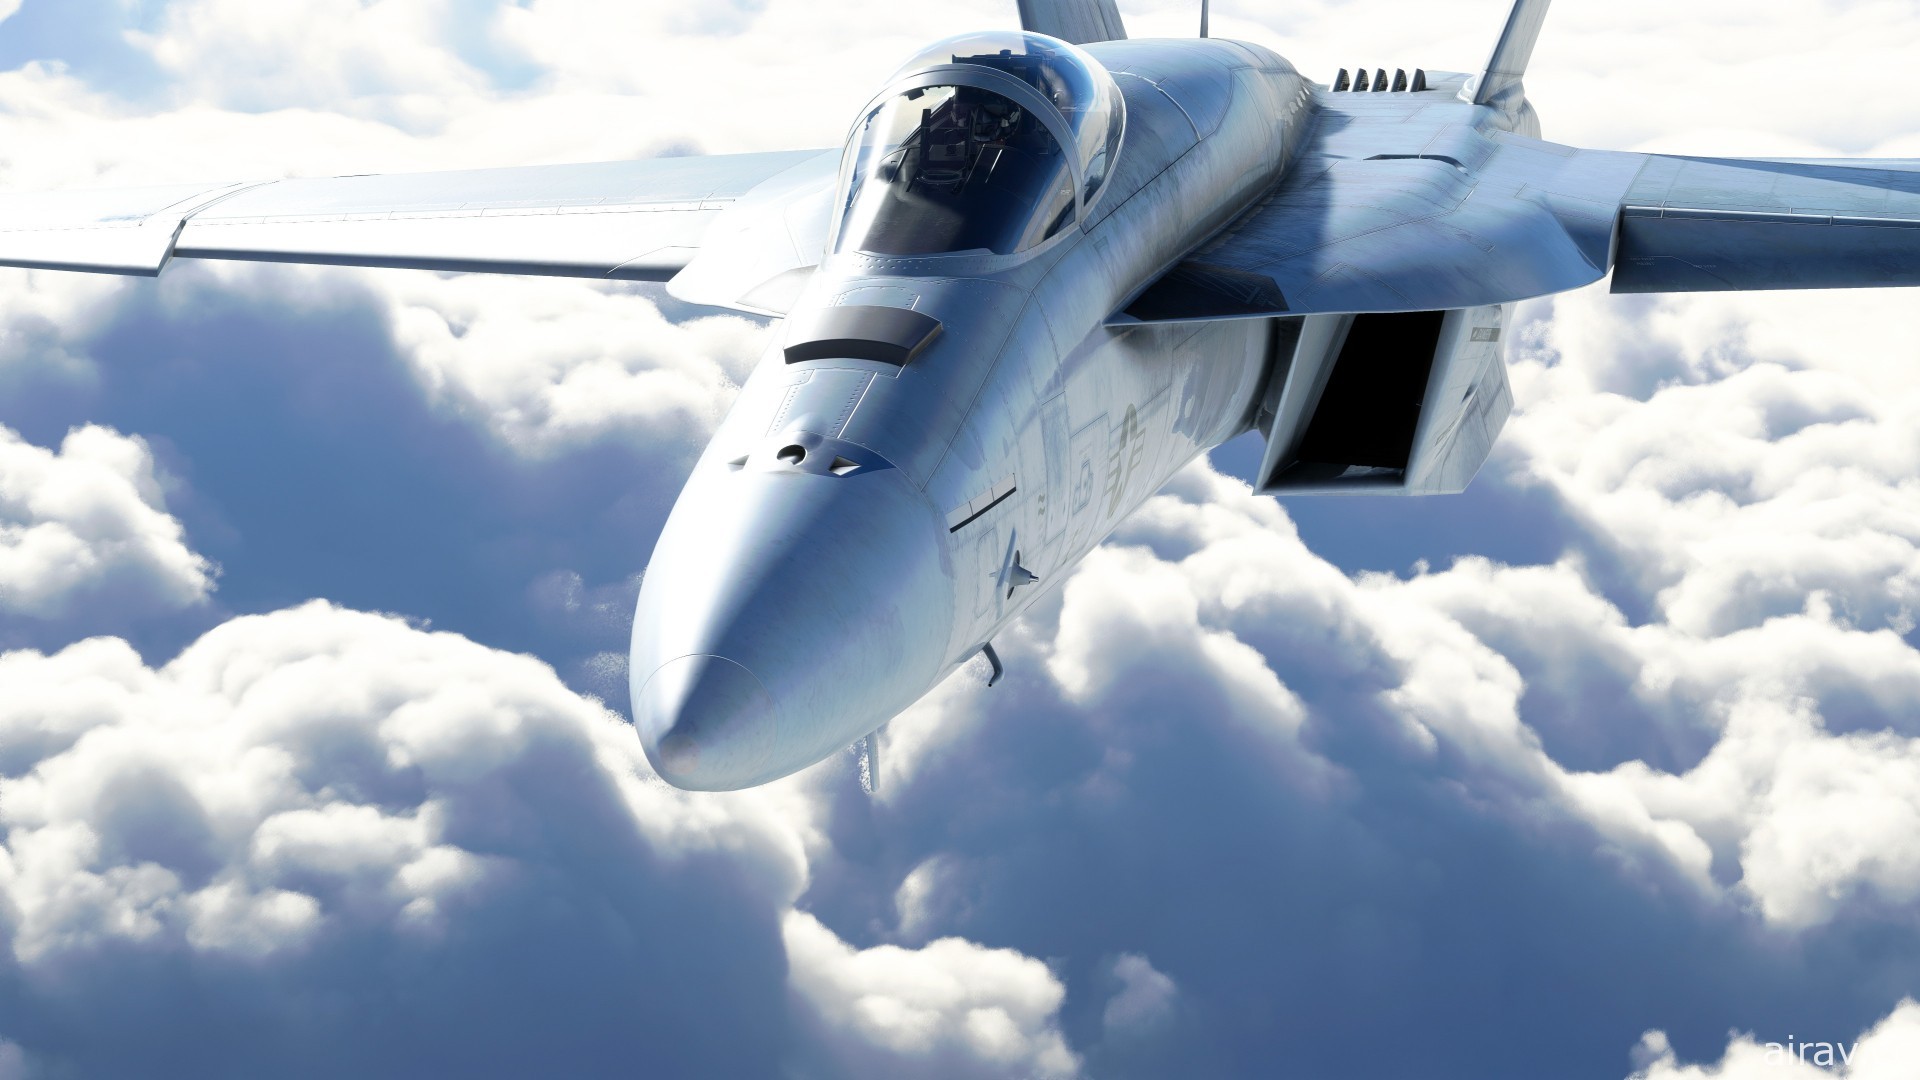 《微軟模擬飛行》年度遊戲版 11 月推出 收錄首款戰鬥機 F/A-18 超級大黃蜂